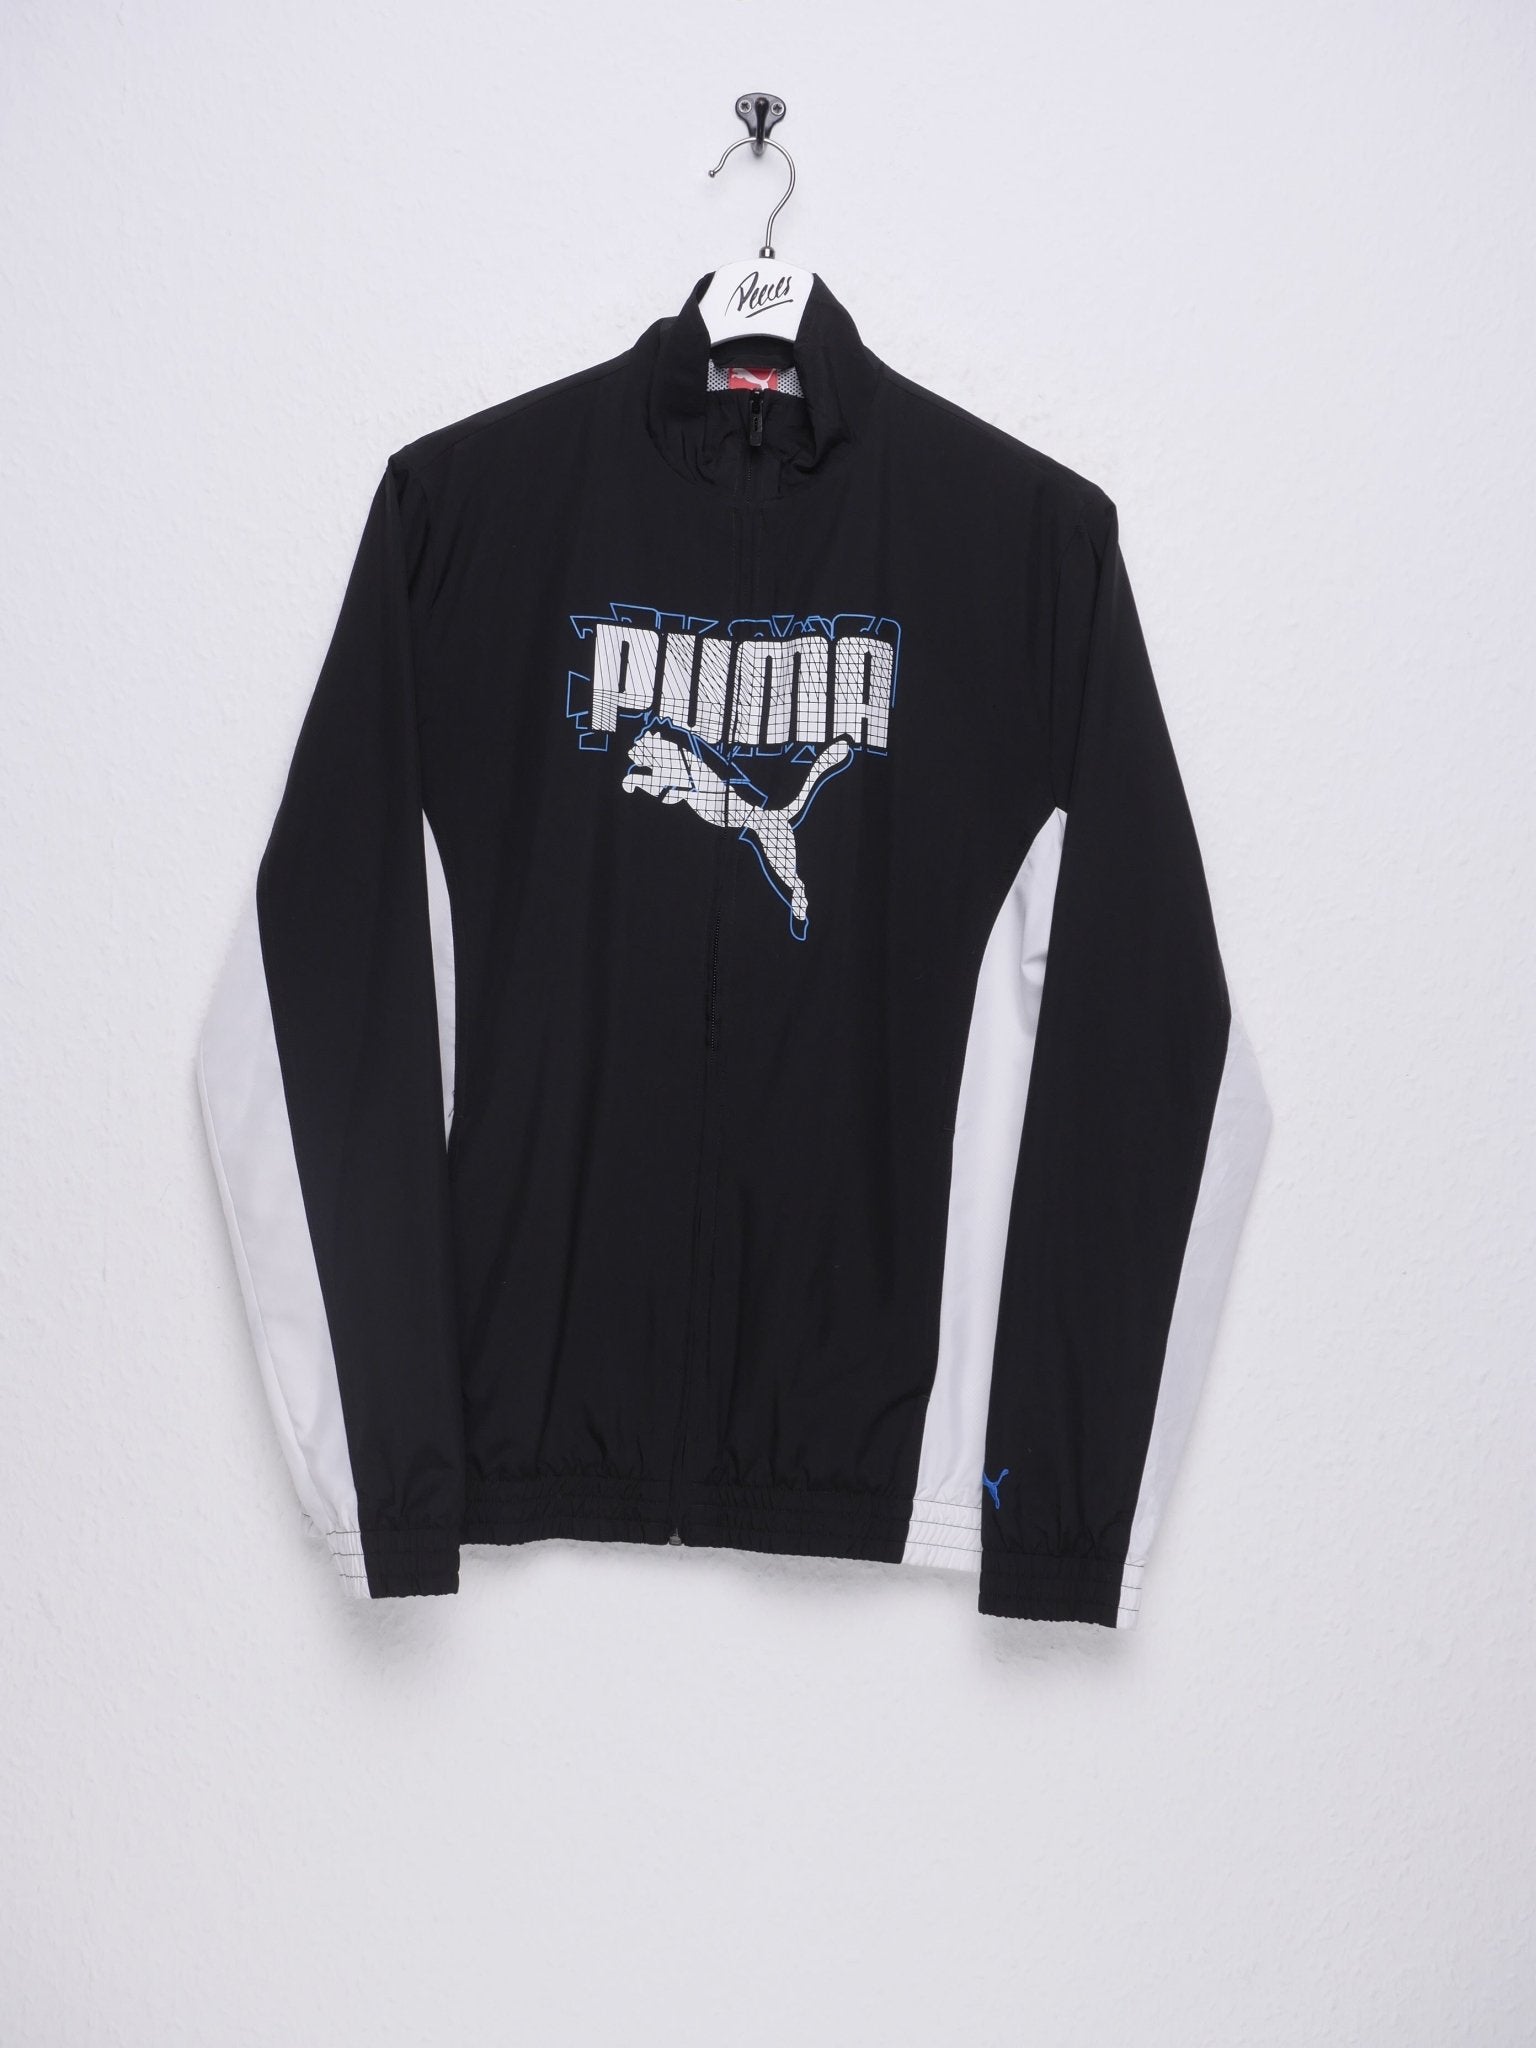 Puma printed Spellout Vintage Track Jacke - Peeces